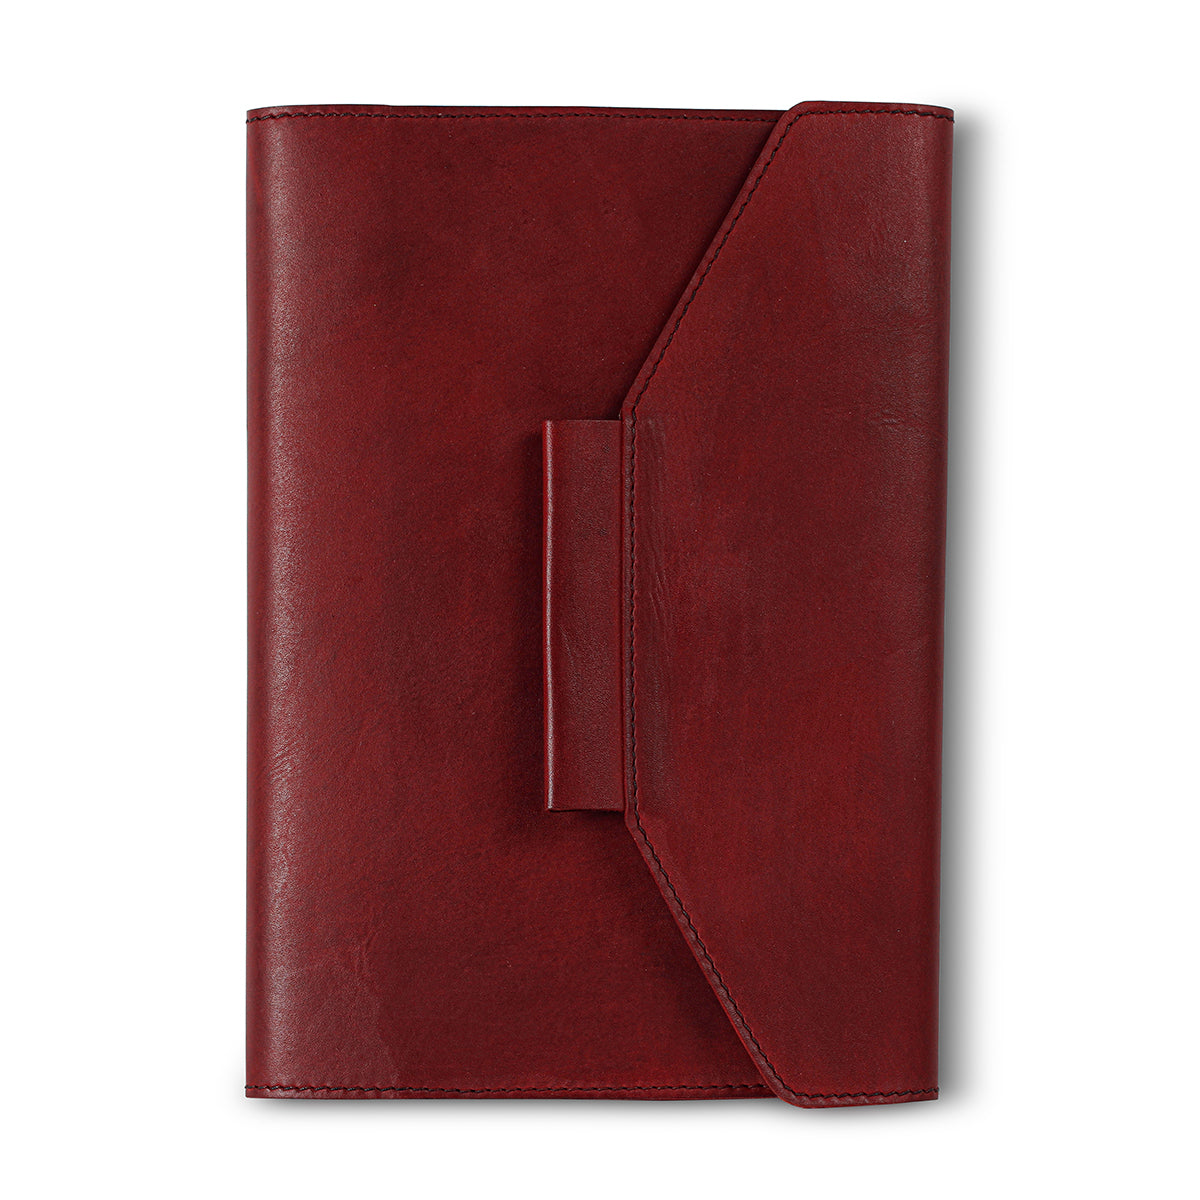 Essential Notebook Organizer - Cherry Red